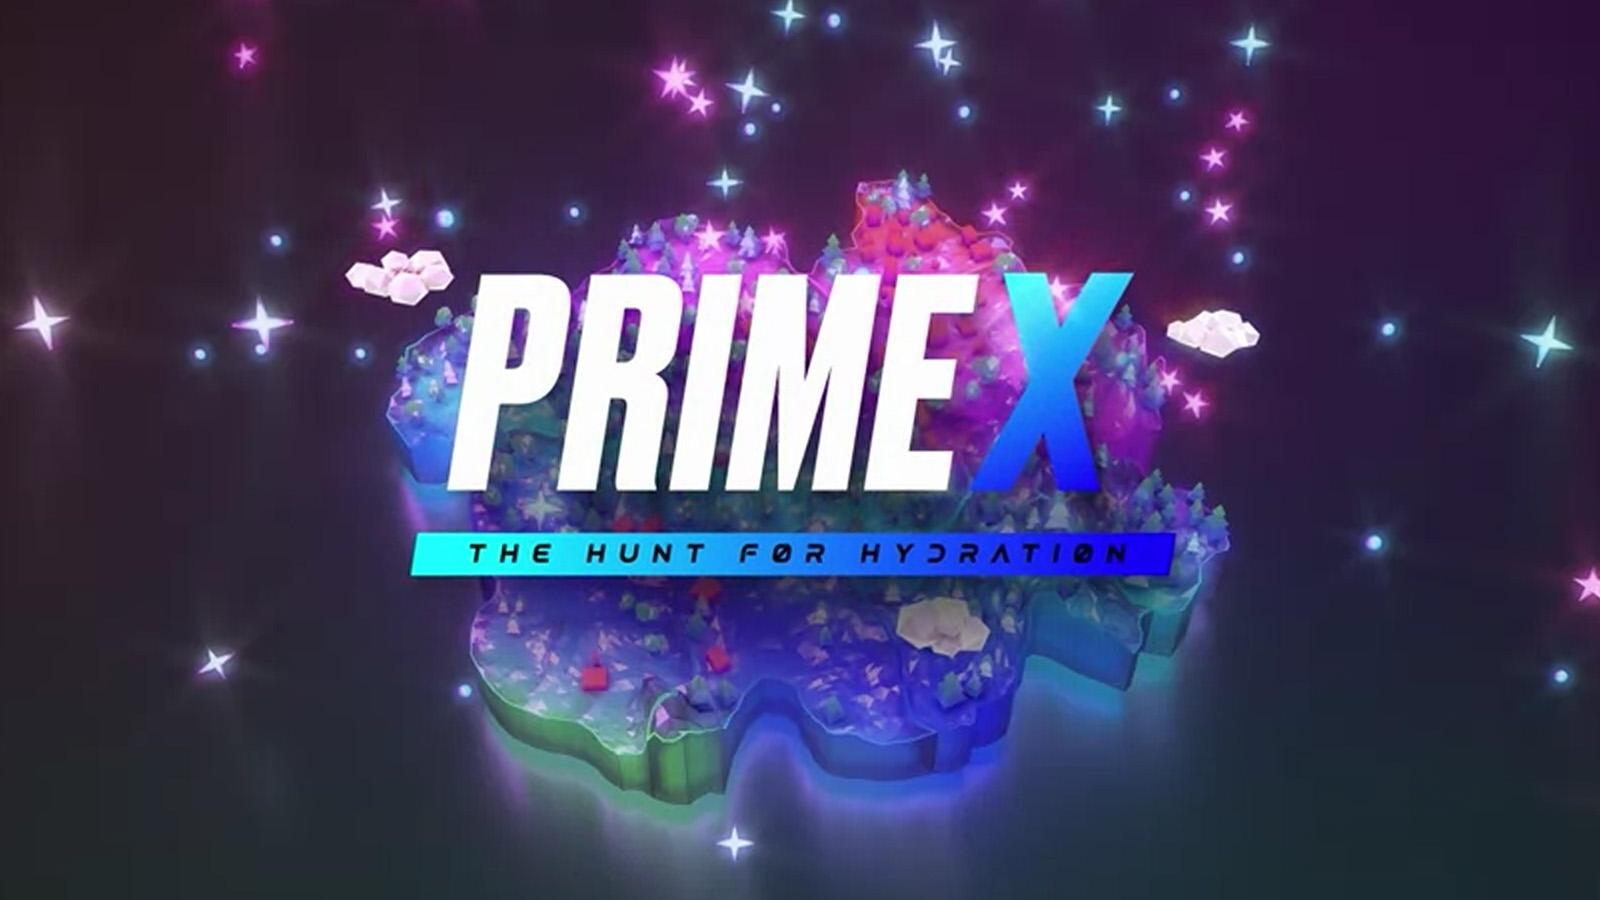 Prime X